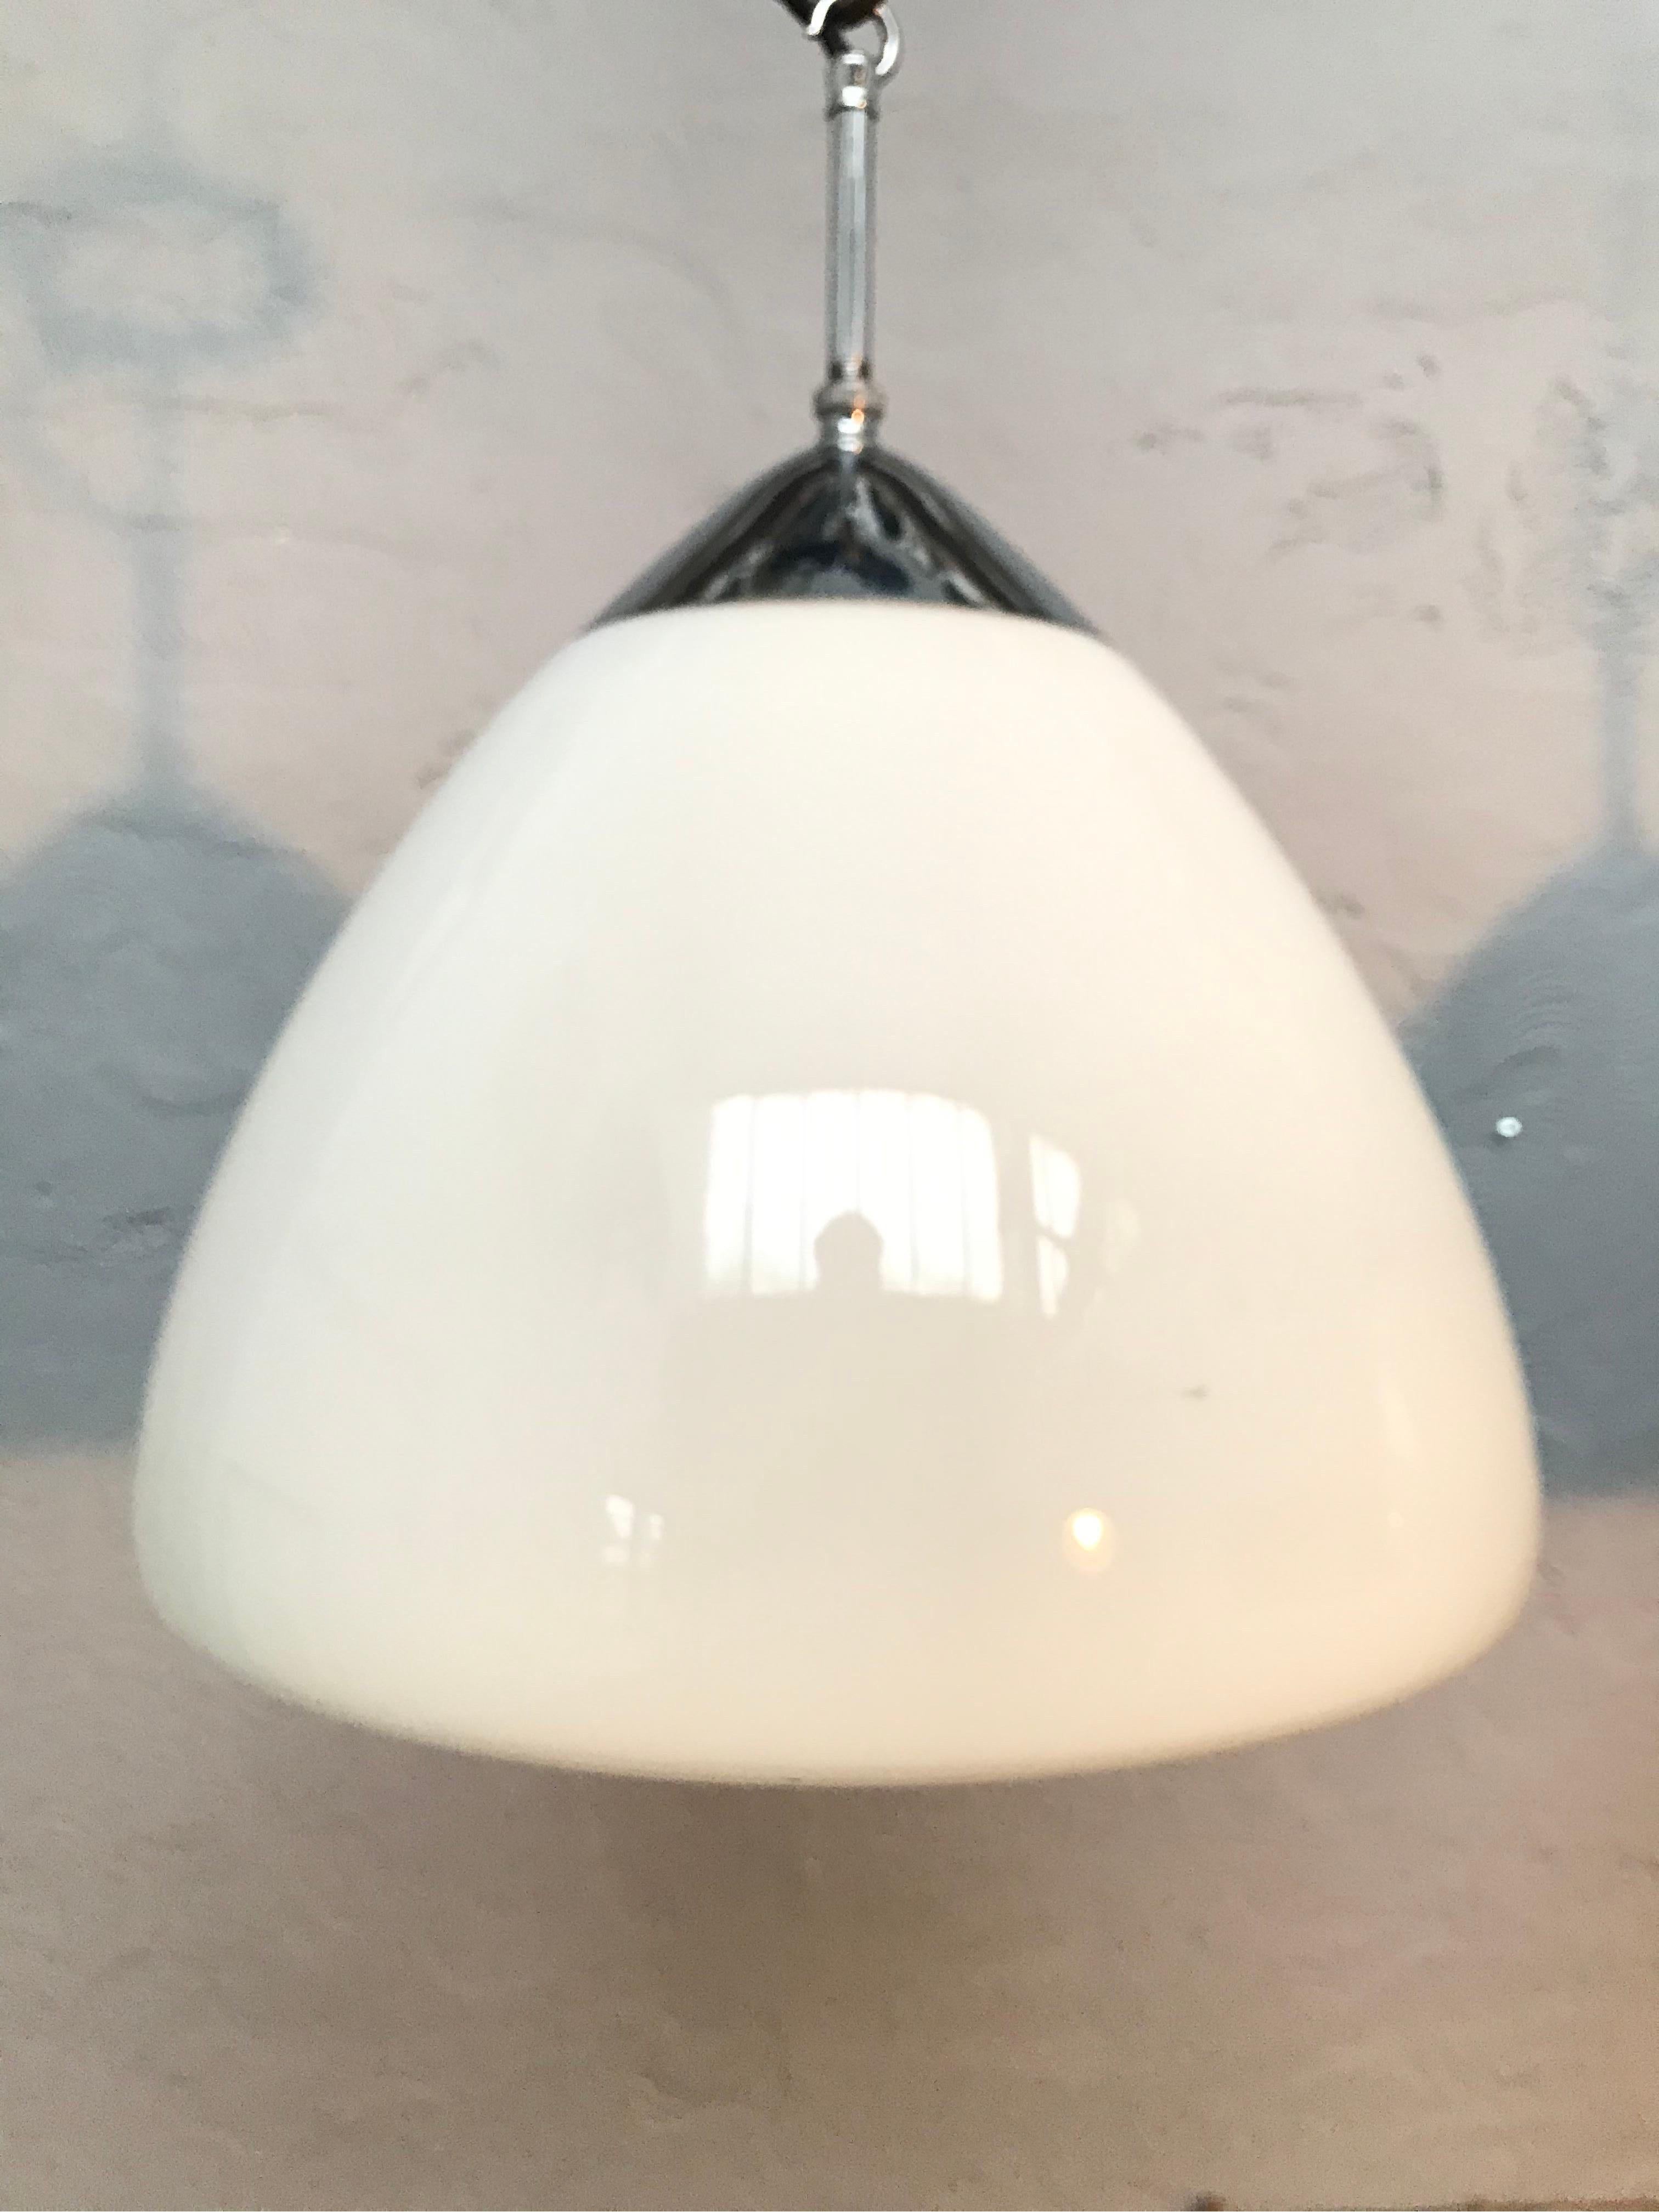 Vintage Danish Vilhelm Lauritzen for Louis Poulsen opaline bell-shaped hand blown glass pendant chandeliers.
En état original avec un nouveau câblage et une mise à la terre.
Suspendu à un tuyau de cuivre nickelé de 10 cm de long.
Superbe design